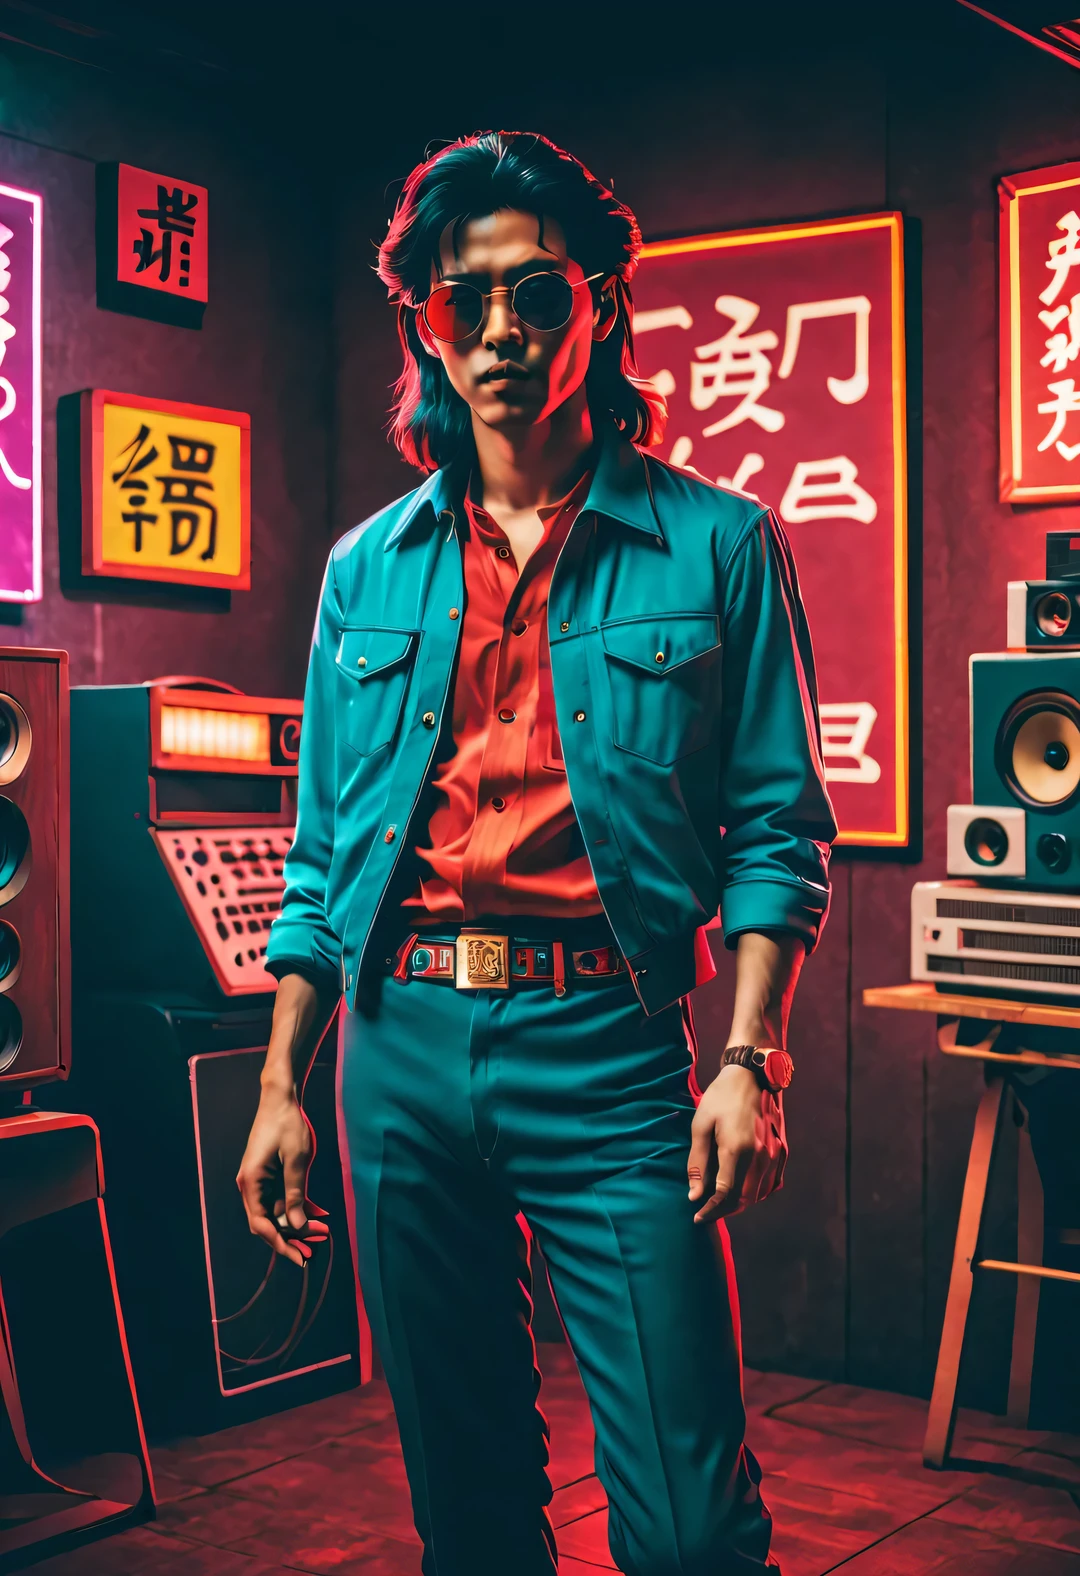 （Diseño de caracteres chinos en la década de 1980.），Diseño de escena cg muy unificado.，estilo onda de vapor,estilo onda de vapor，estilo retro，
（Jóvenes chinos en un salón de baile de rock and roll en los años 80），（todo el cuerpo），（Pelo largo y ondas grandes.），（El pelo de las patillas es muy largo.）（Usa ropa de hombre&#39;Camisa a cuadros roja popular en China en la década de 1980），（pantalones acampanados azules），（Use gafas de aviador con montura dorada que fueron populares en la década de 1980.），（En su mano sostiene una gran grabadora antigua de los años 80..），standing next to each other with a vocero, vocero, retro and 1 9 estilo de los 80, estilo 1980, 1 9 estilo de los 80, 19estilo de los 80,viejas paredes de ladrillo, 8 0 estilos, Desde la década de 1970, estilo de los 80, estilo de los 80，ricos detalles，中国19estilo de los 80，
estilo onda de vapor, Hermoso detallado， Estilo de fotografía de baja fidelidad, ESTILO RETROFUTURISMO, estilo ultramoderno, Estilo de fotografía vintage, estilo ciberpunk, estilo distópico，Estilo de arte de falla, Hermoso detallado